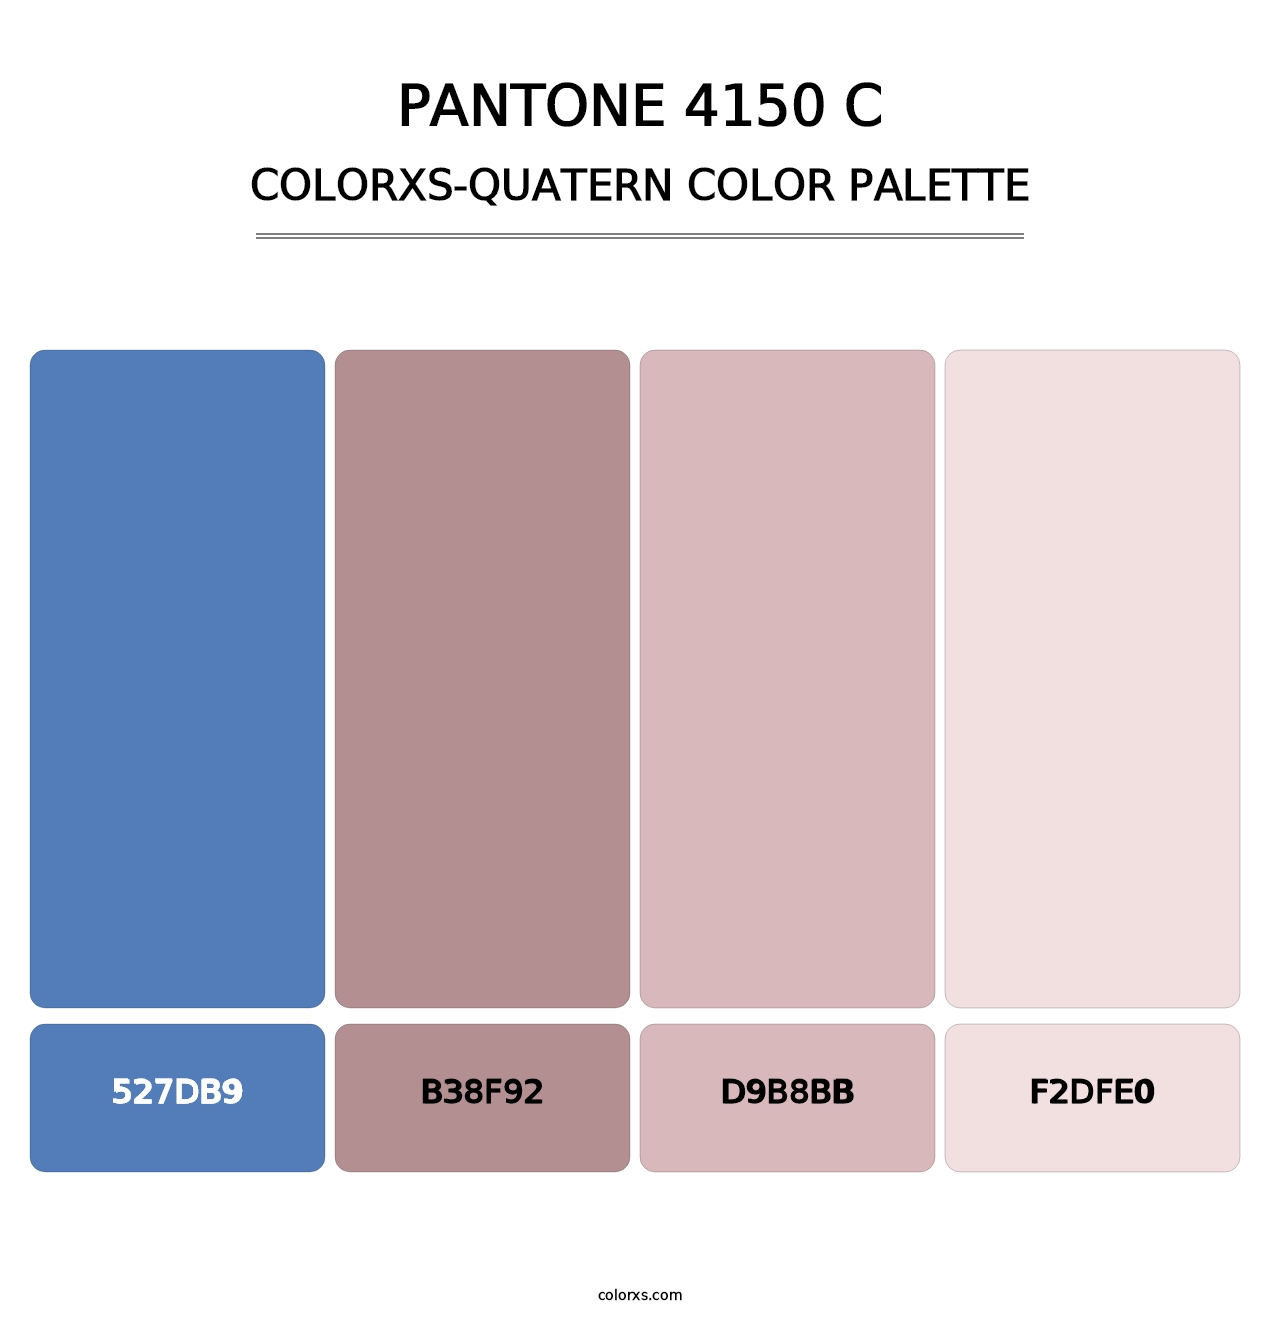 PANTONE 4150 C - Colorxs Quatern Palette